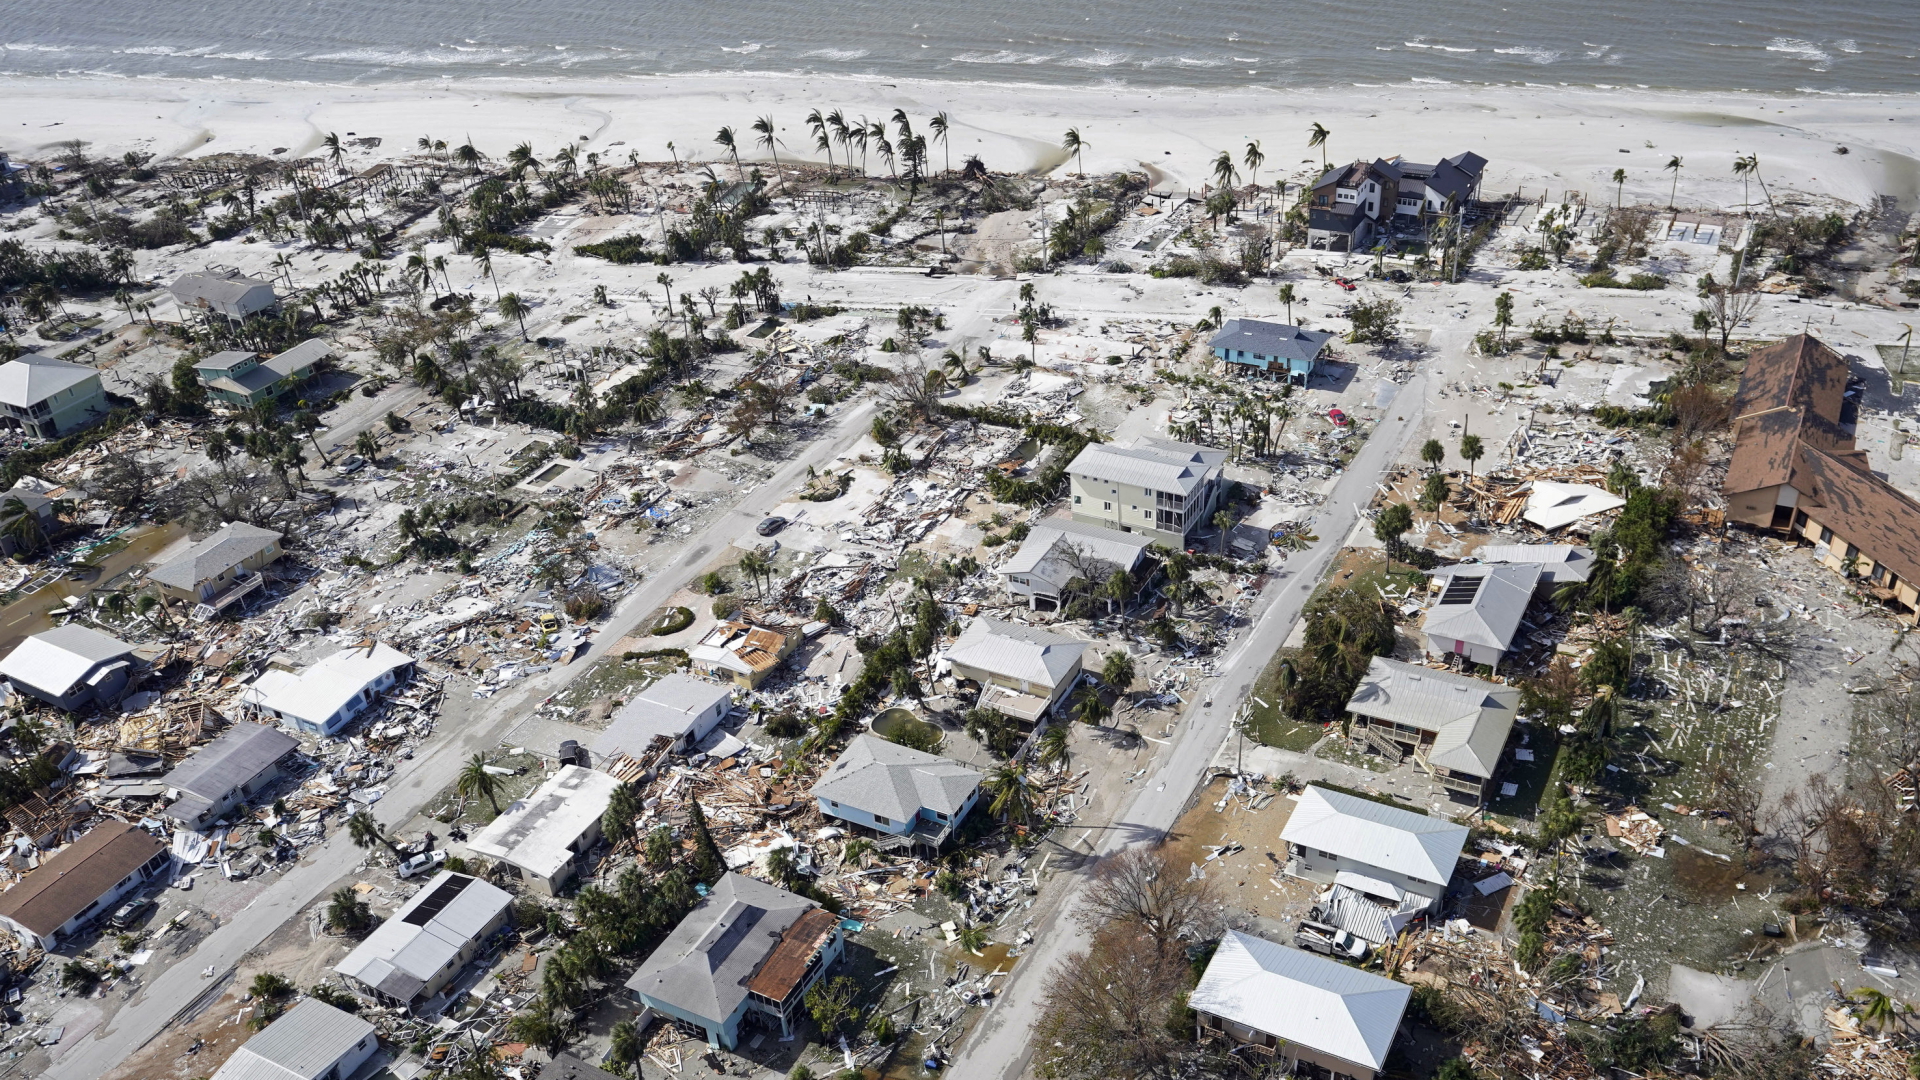 Zerstörung nach Hurrikan "Ian" in Fort Myers Beach, Florida, am 29. September 2022.